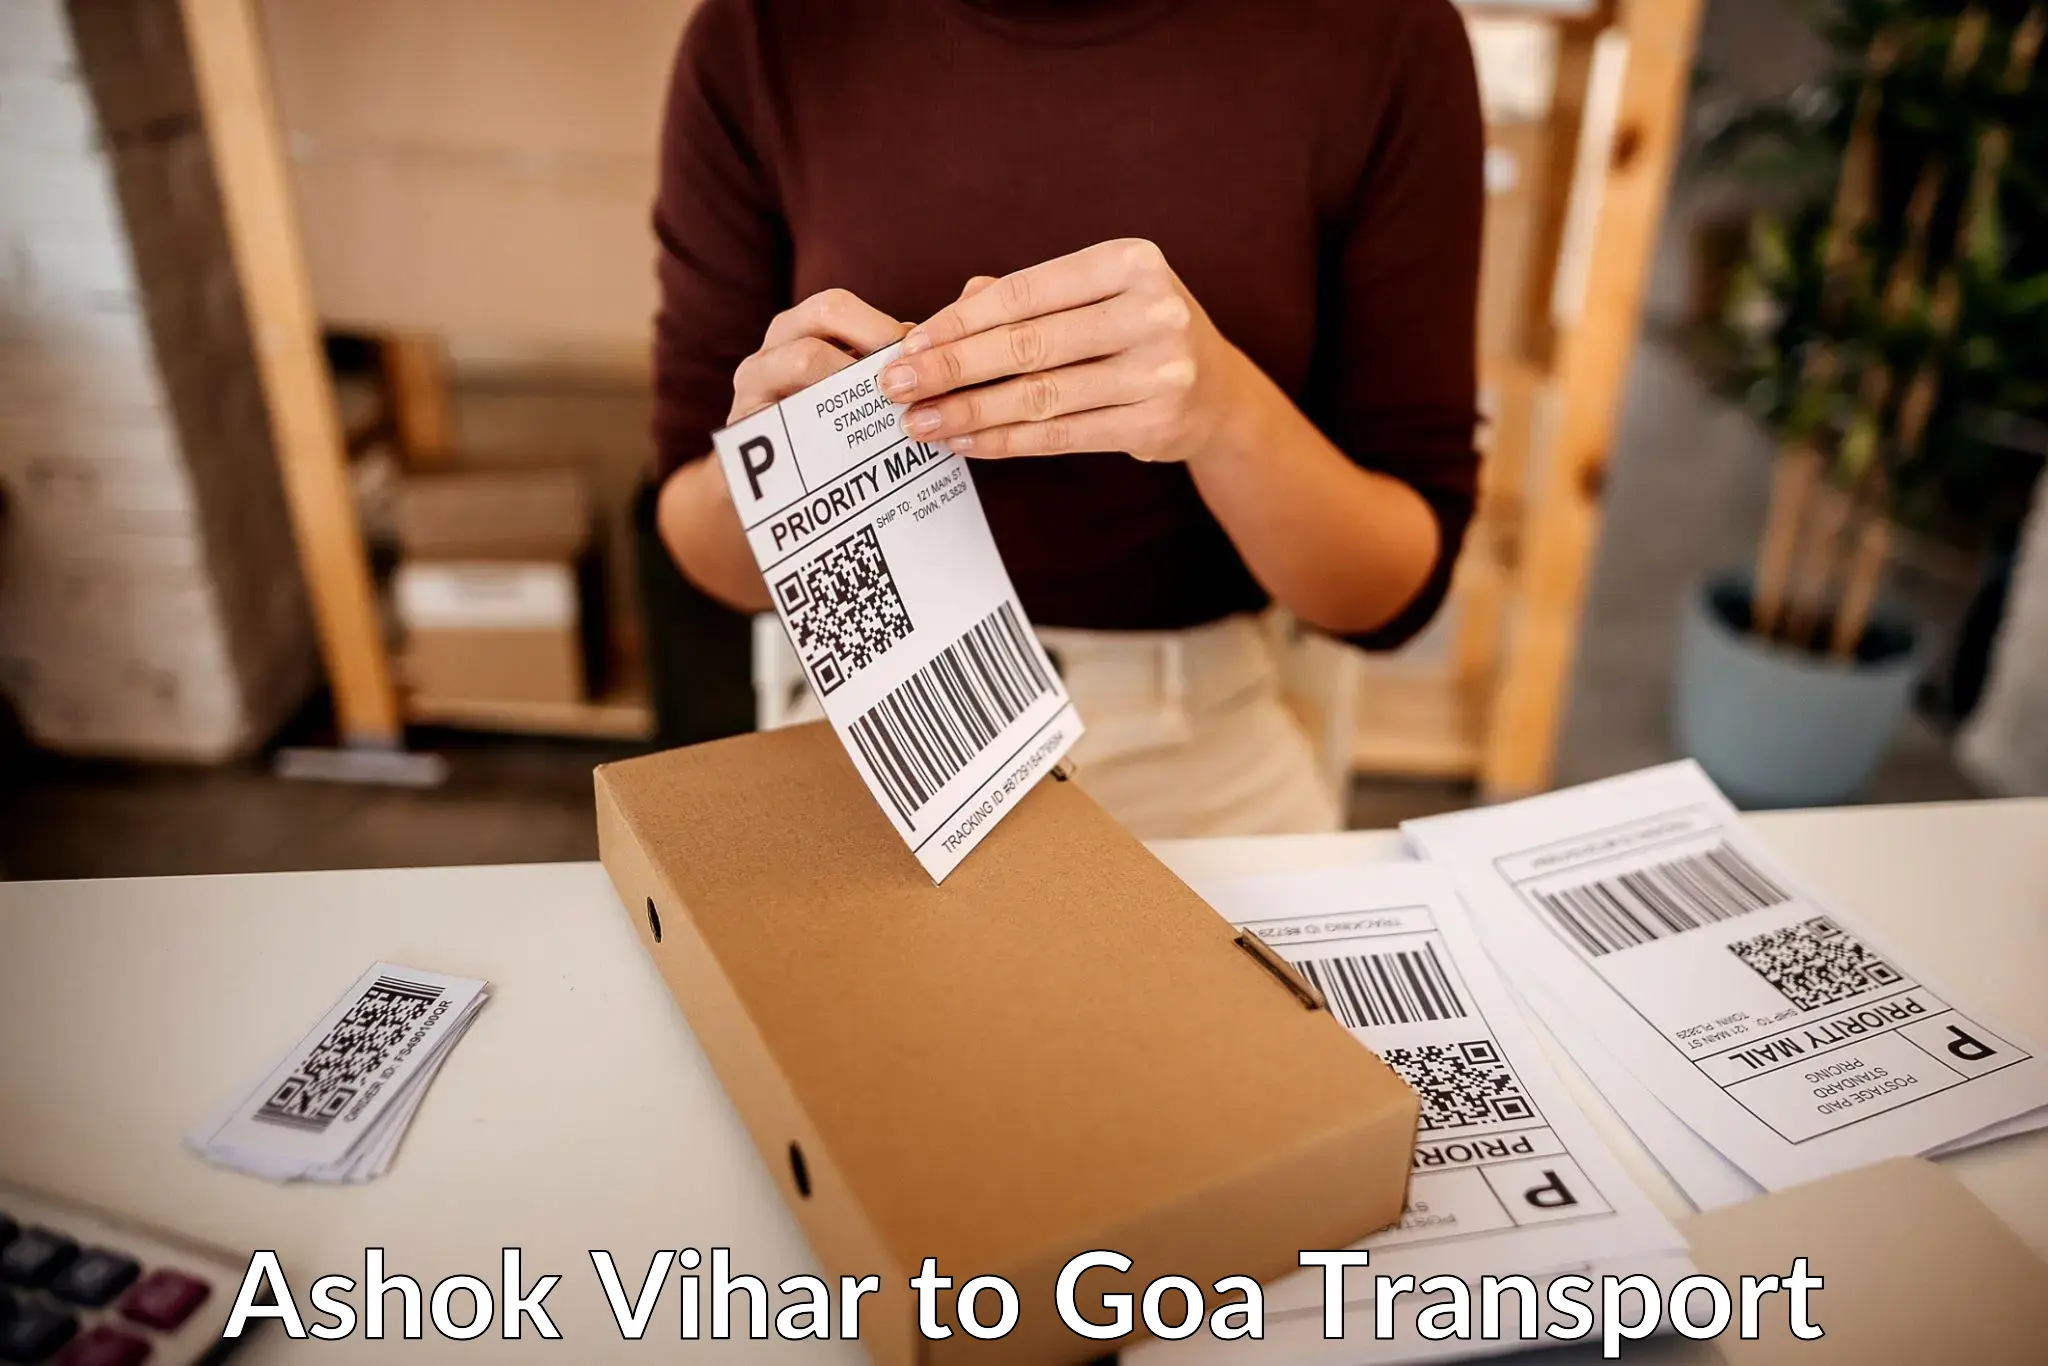 Daily transport service Ashok Vihar to Mormugao Port